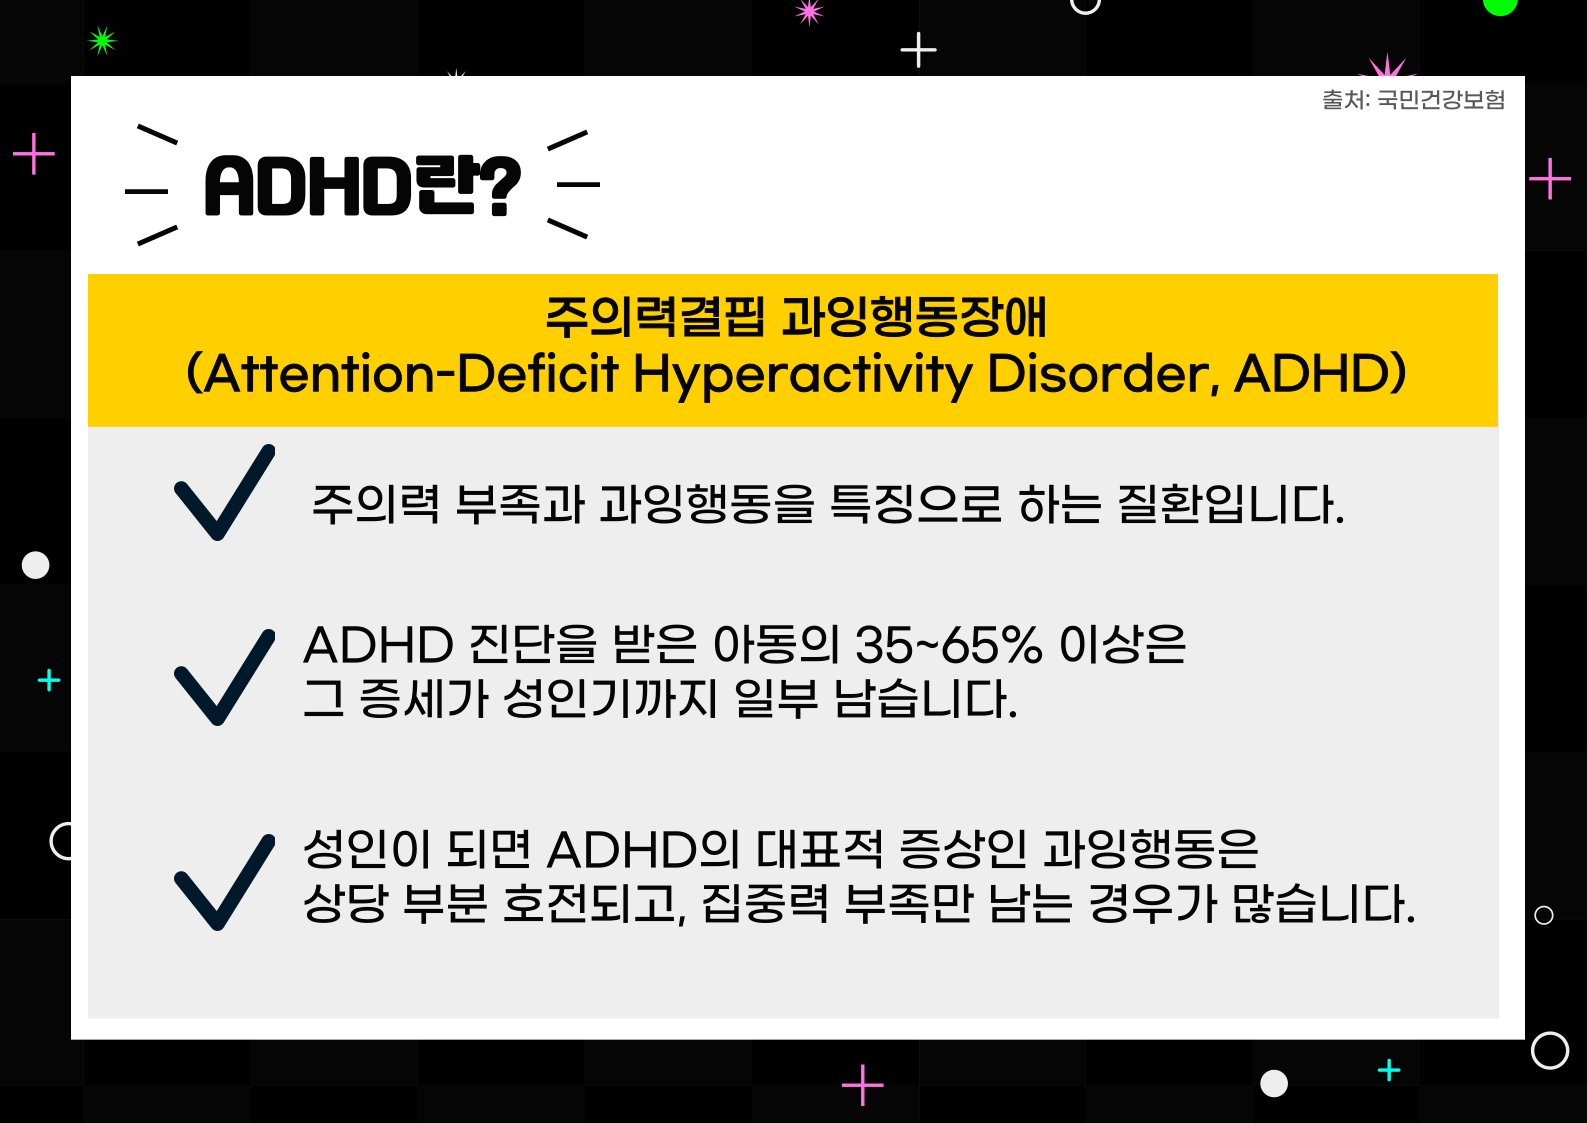 ADHD 란? 주의력결핍 과잉행동장애(Attention-Deficit Hyperactivity Disorder, ADHD)

-주의력 부족과 과잉 행동을 특징으로 하는 질환입니다.
-ADHD 진단을 받은 아동의 35~65% 이상은 그 증세가 성인기까지 일부 남습니다.
-성인이 되면 ADHD의 대표적 증상인 과잉 행동은 상당 부분 호전되고, 집중력 부족만 남는 경우가 많습니다.